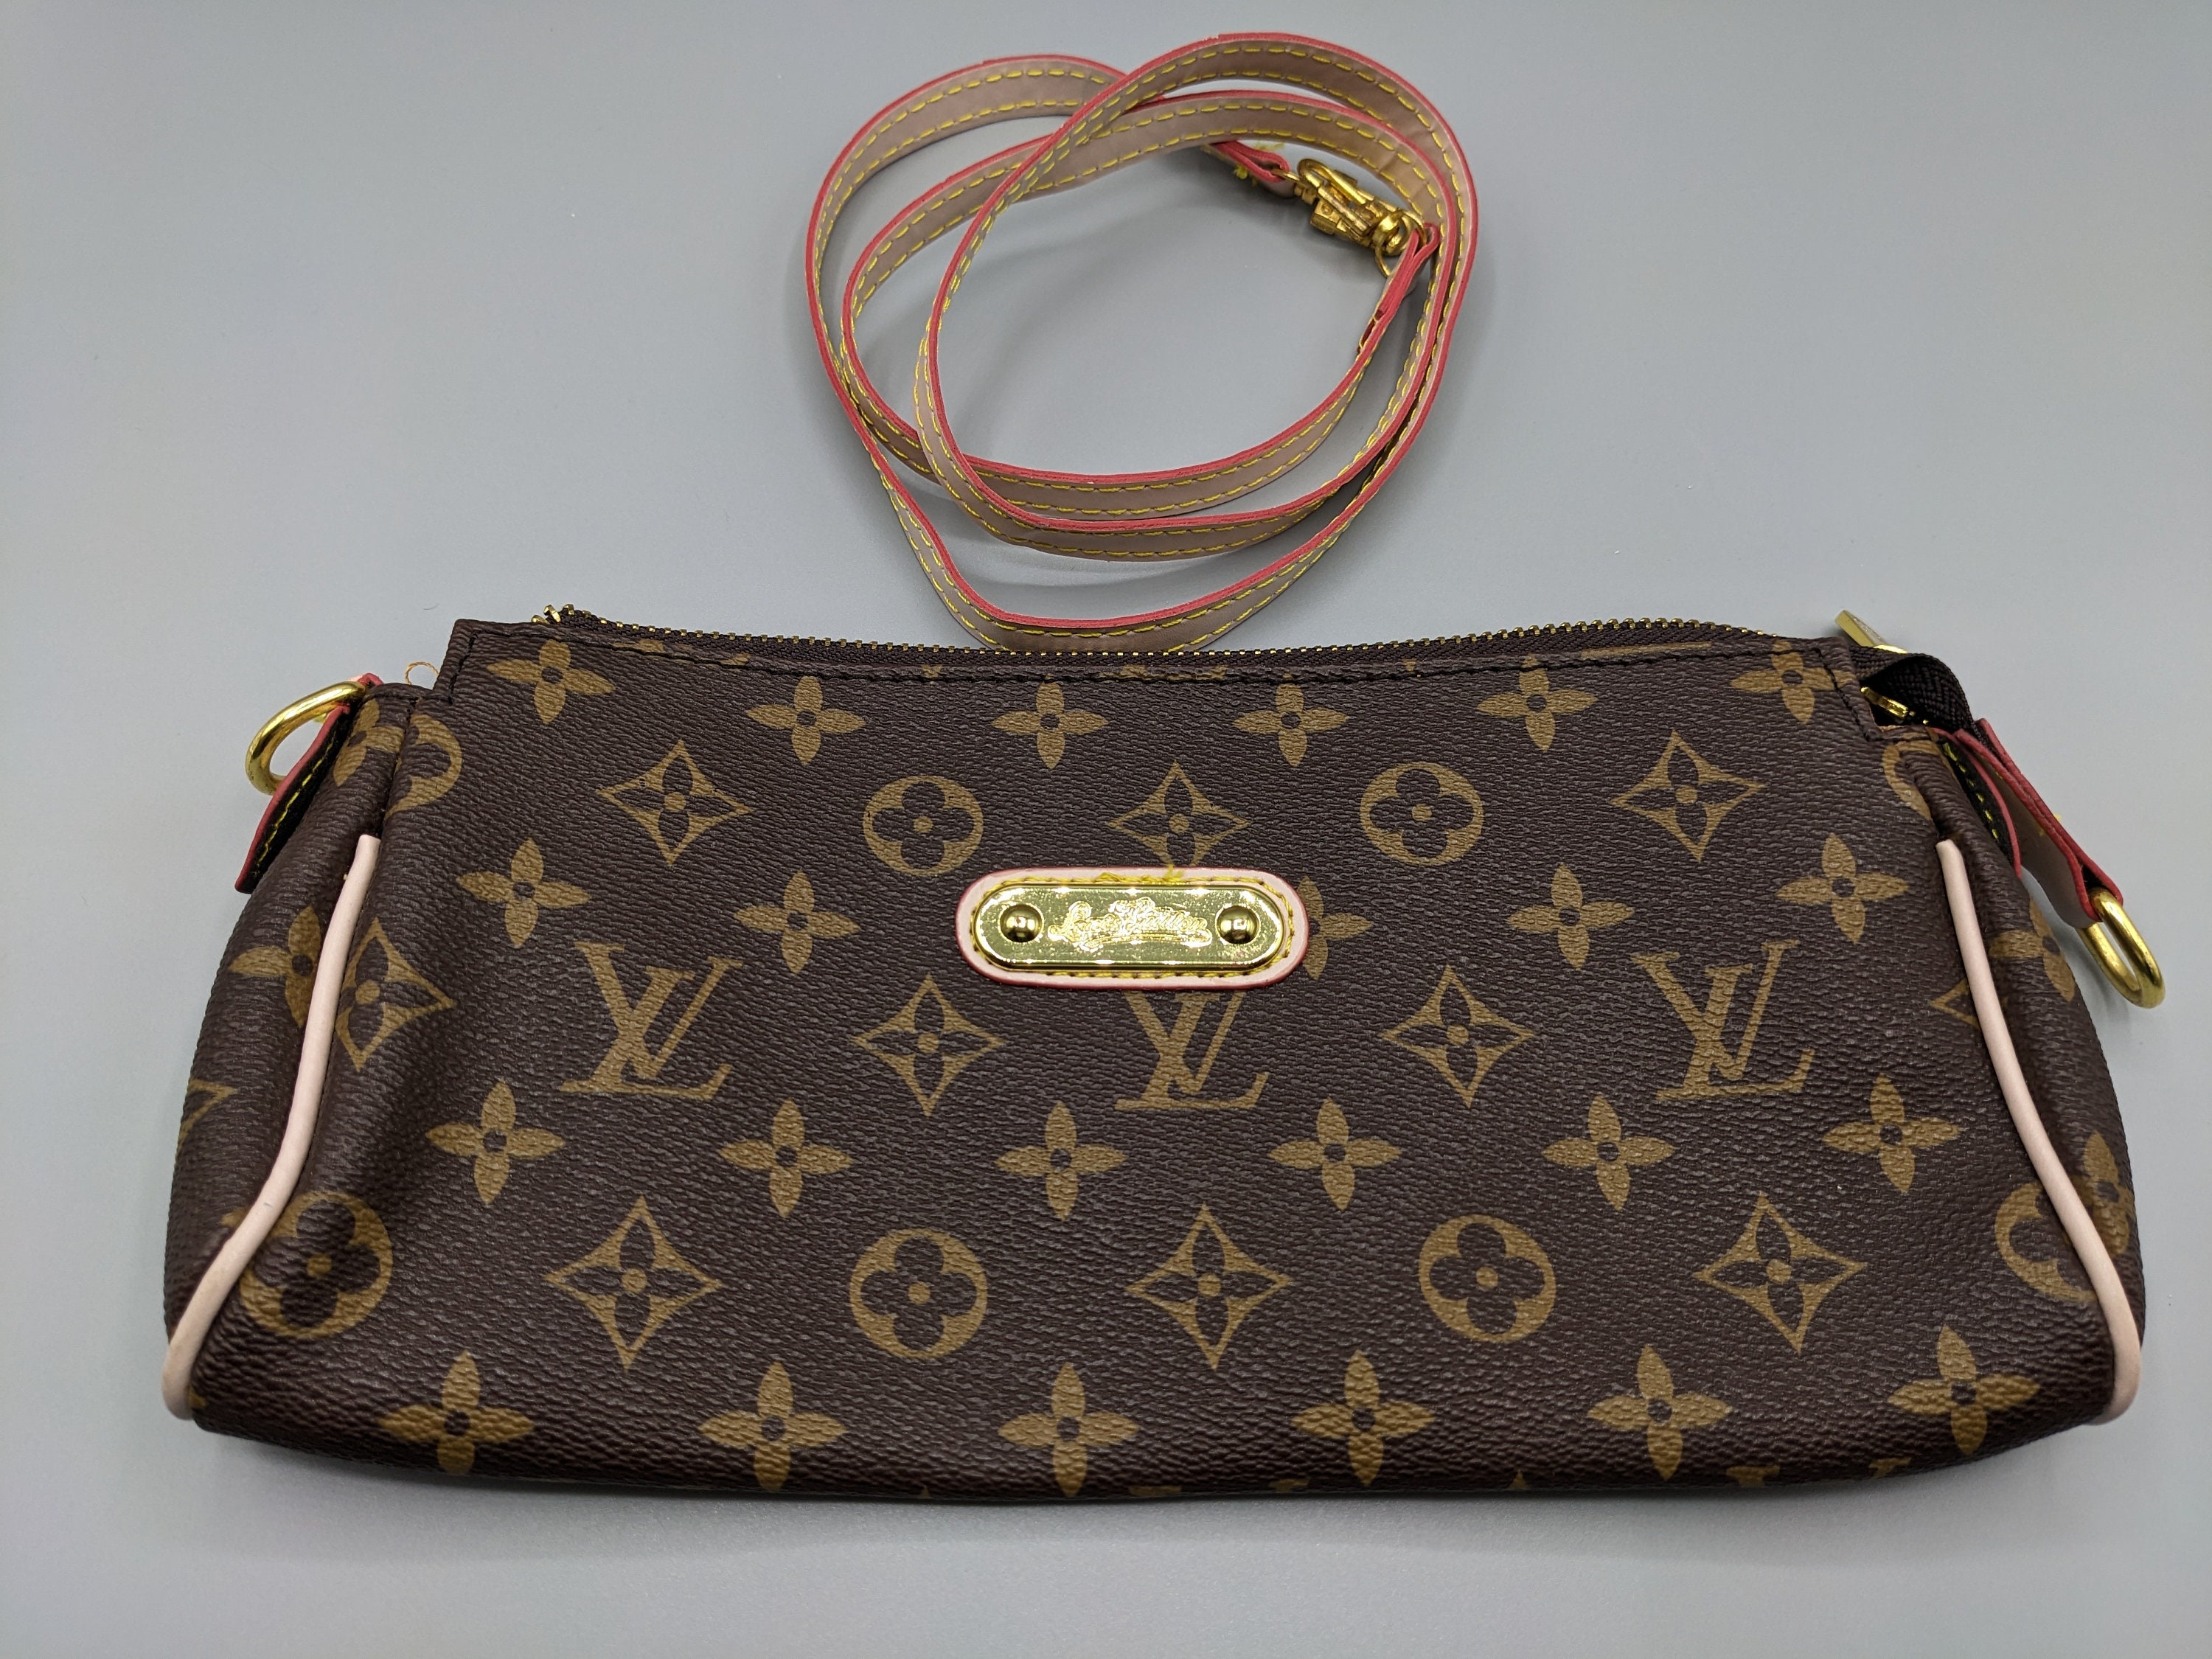 LOUIS VUITTON Monogram Pochette Eva Clutch Shoulder Bag - 30% Off